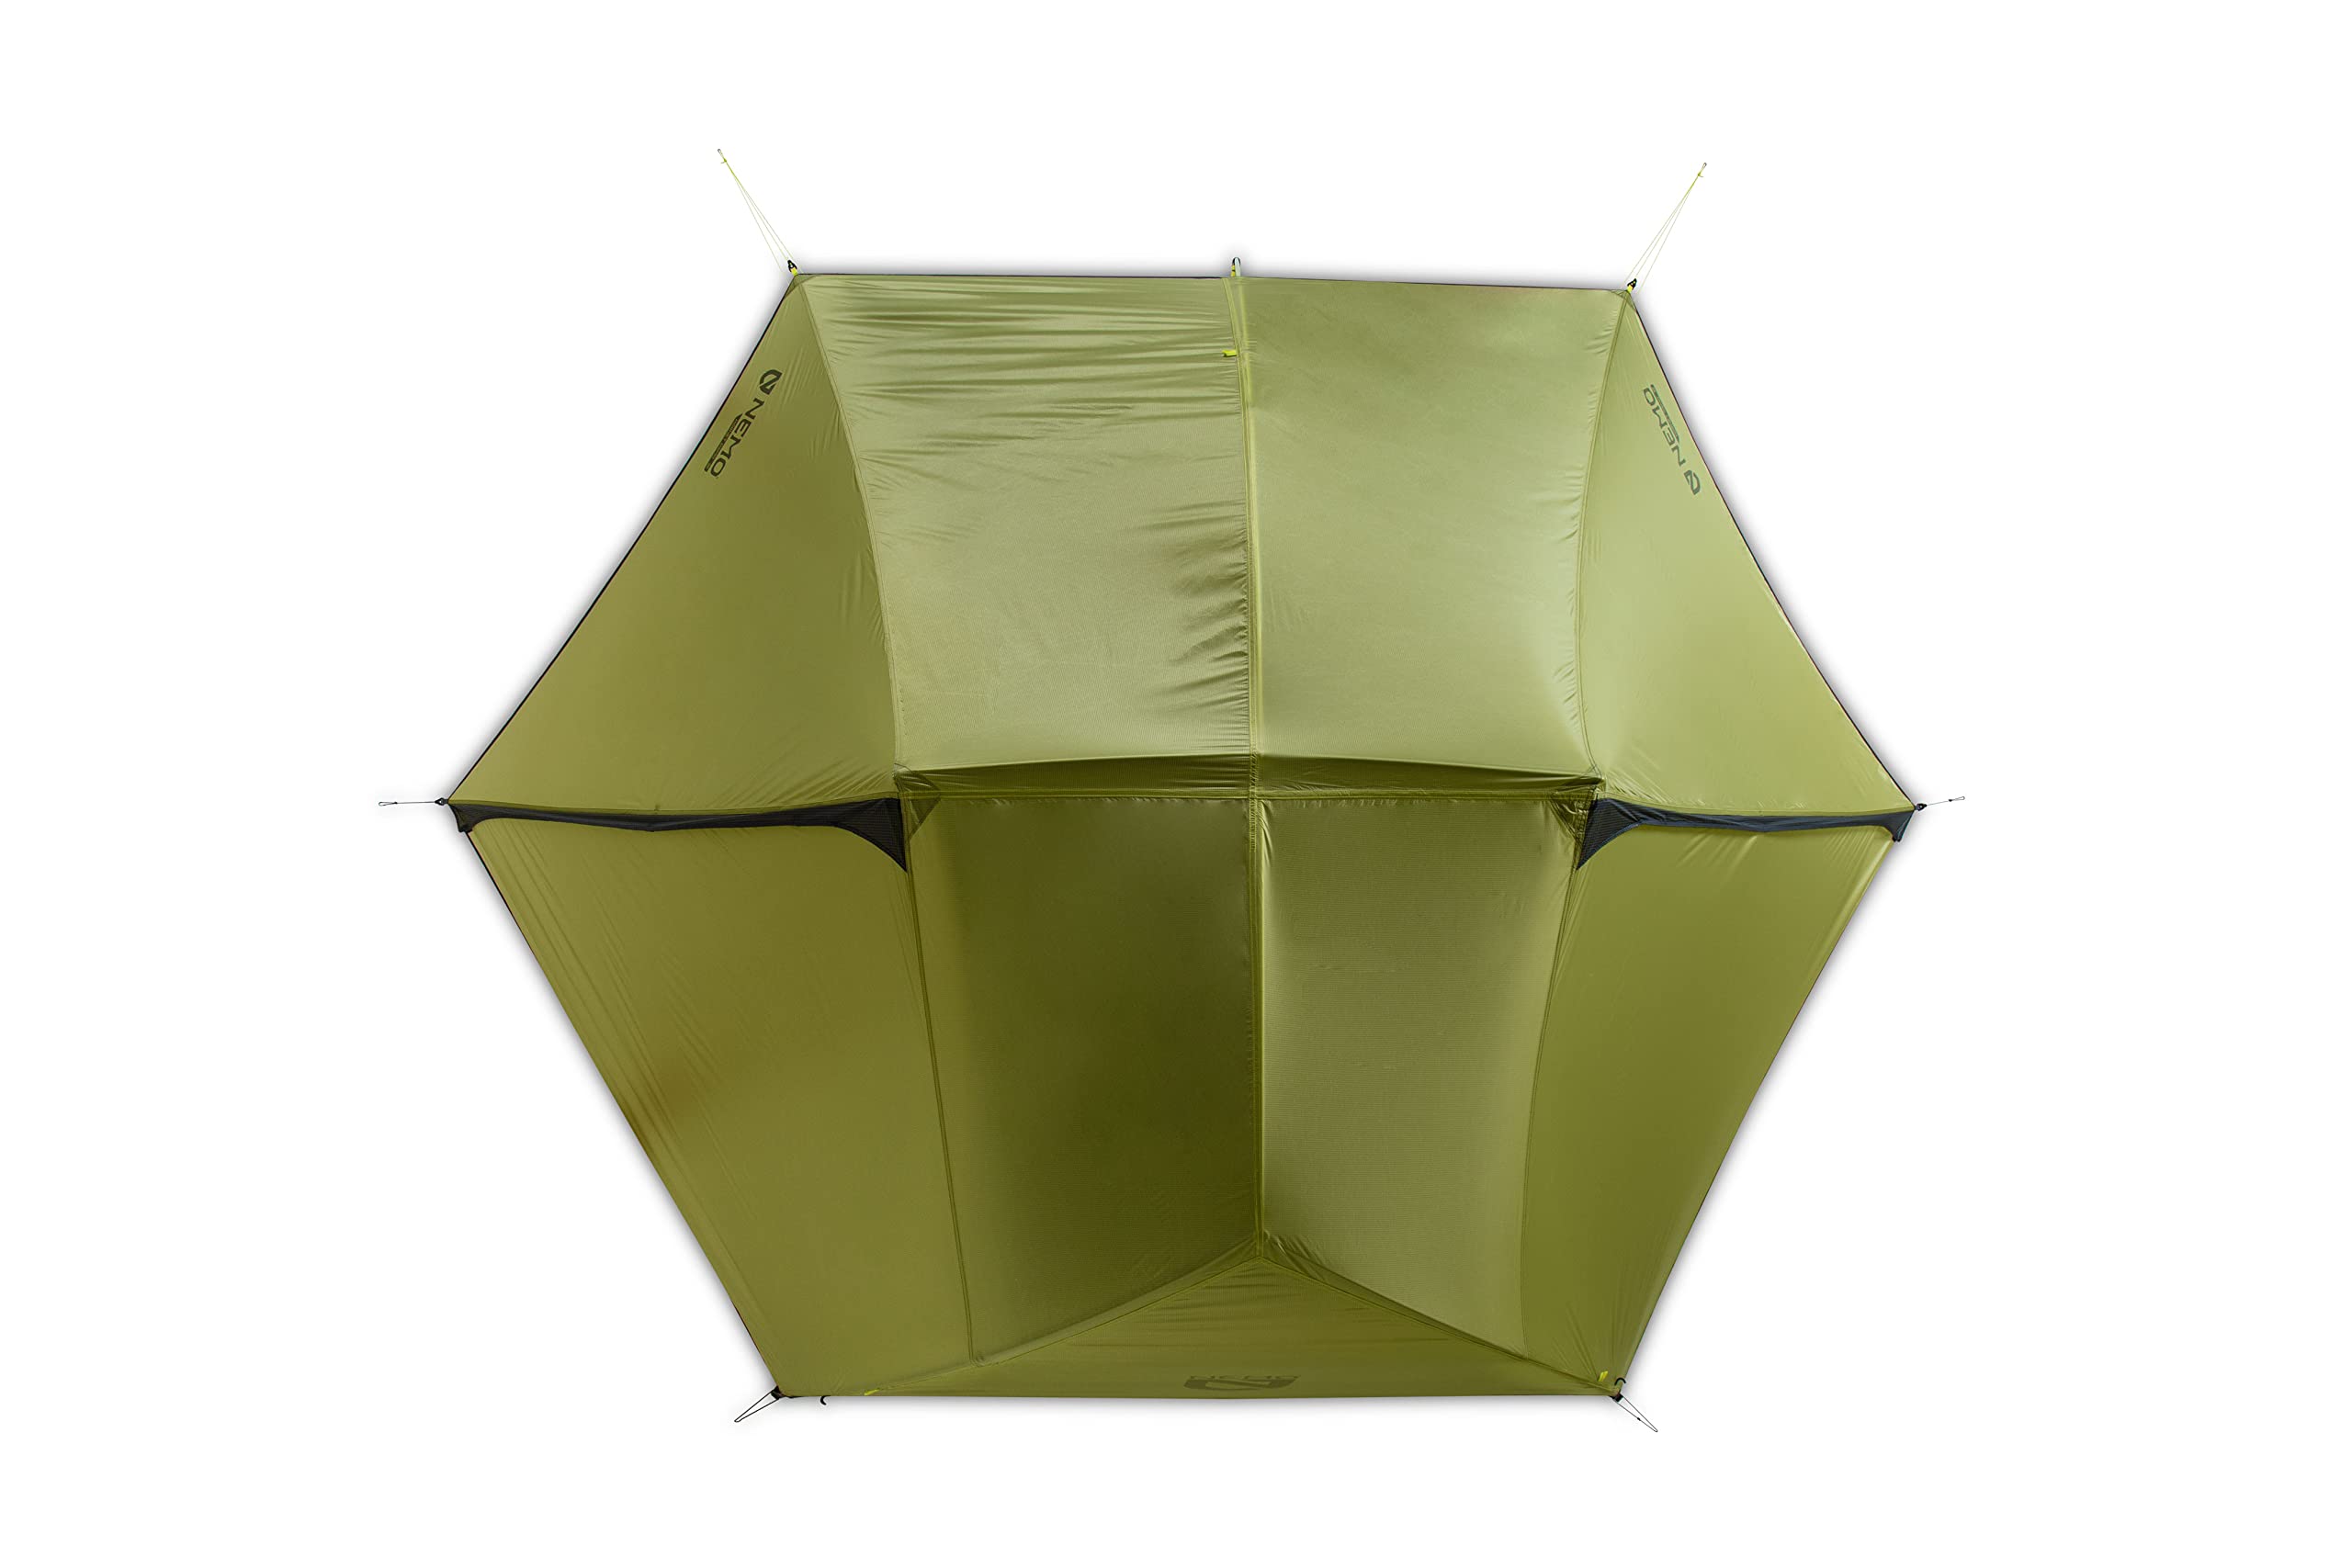 NEMO Hornet OSMO Ultralight Backpacking Tent